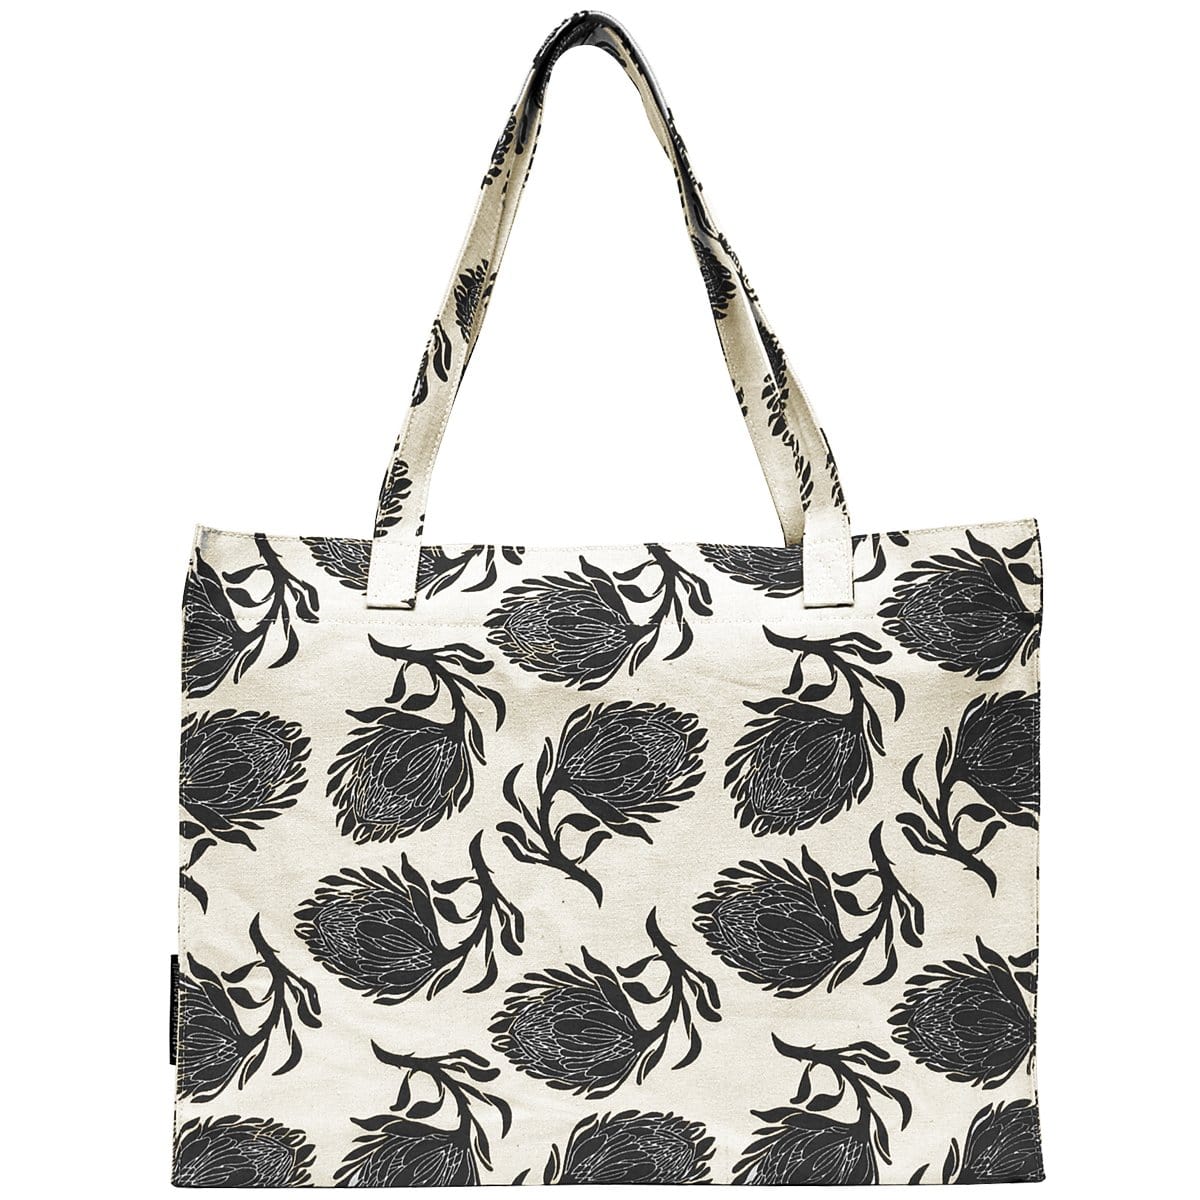 Designer Tote Bag Protea Print Canvas Bag Reusable Shopping 